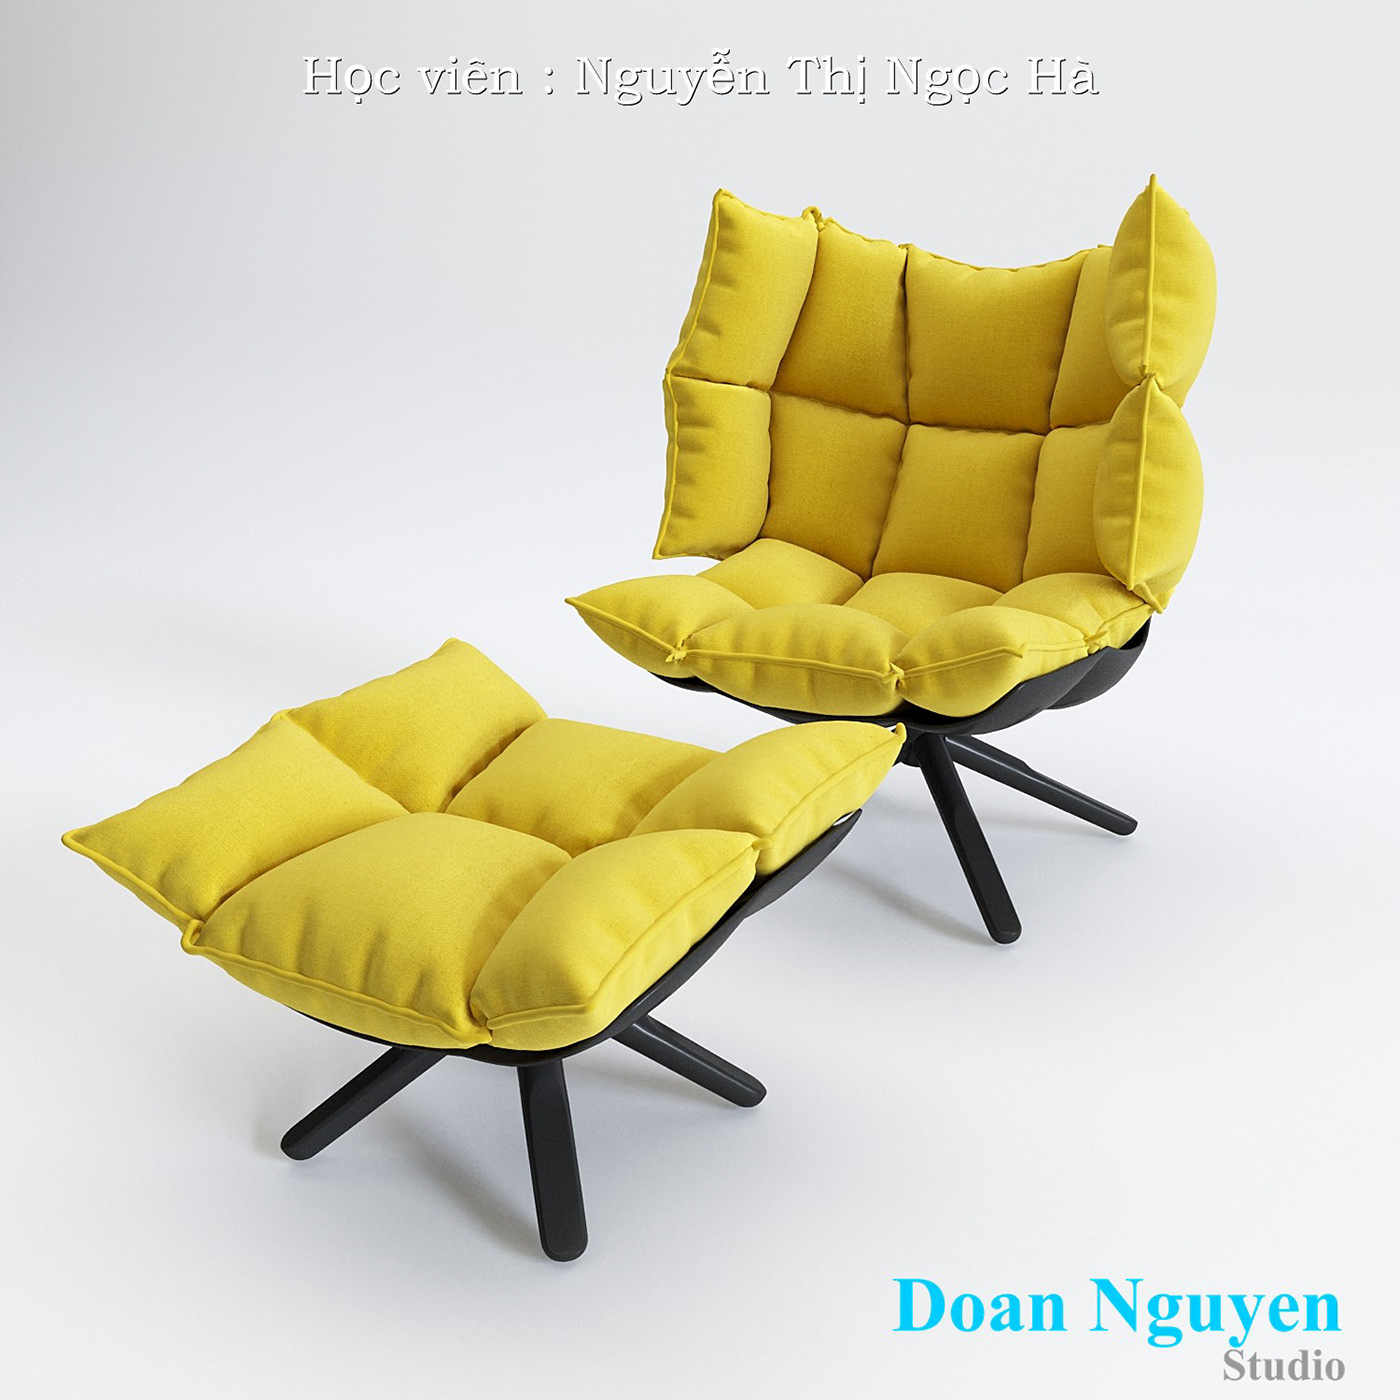 3dsmax Doan Nguyen DoanNguyenstuido chair MarvelousDesigner Interior clothes